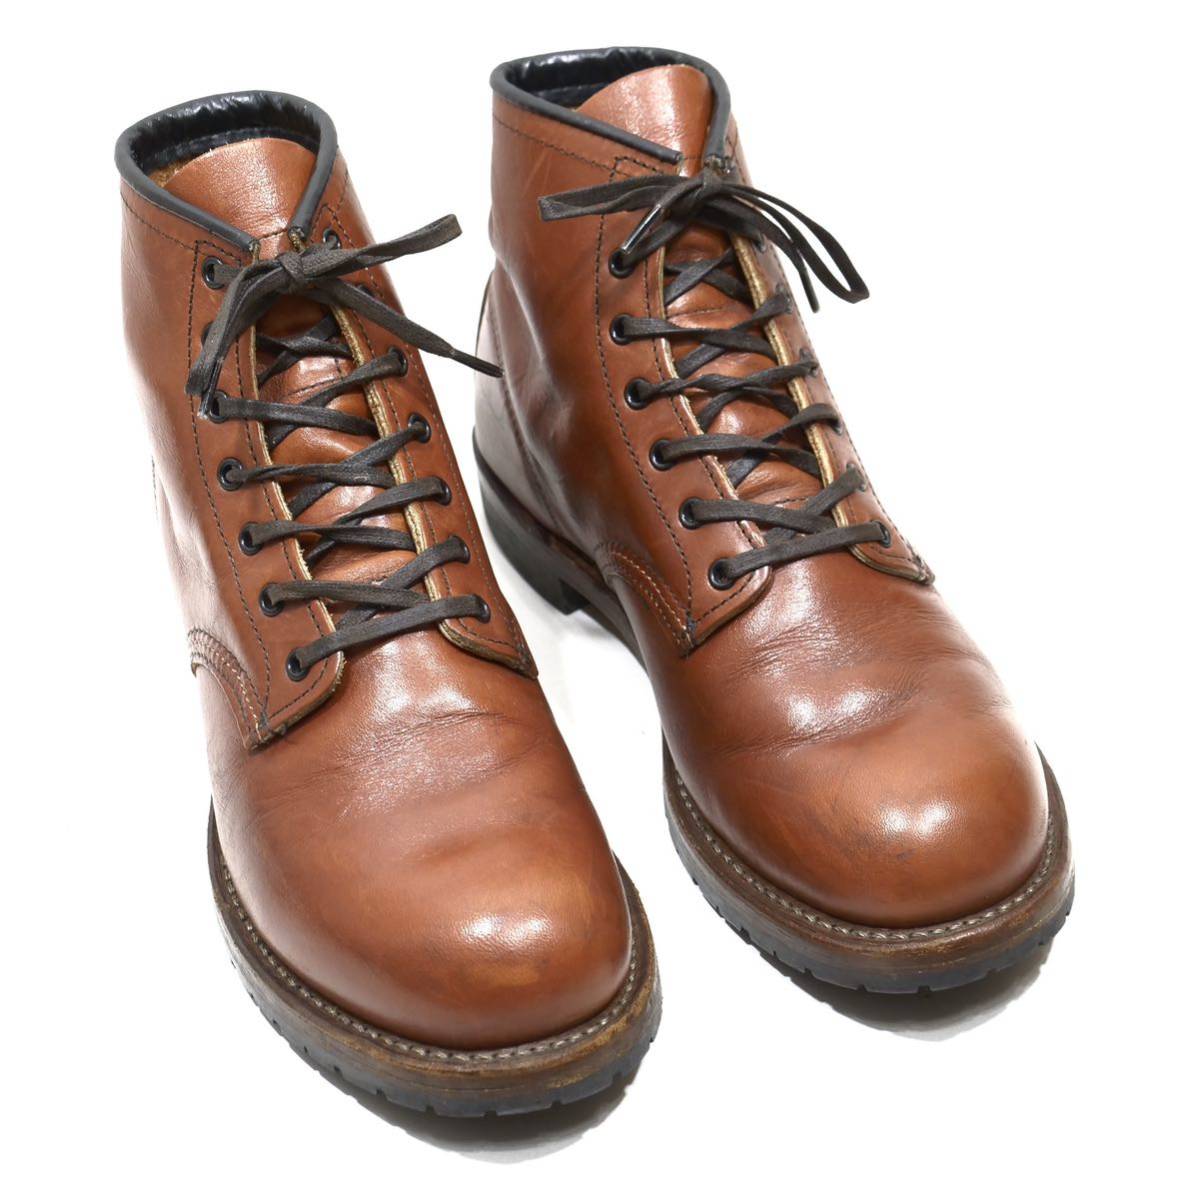 《廃盤稀少◎》REDWING レッドウイング 9022 ベックマン ブリックセトラーレザー ブラウン ワークブーツ US7.5D 25.5cm相当 メンズ 革靴